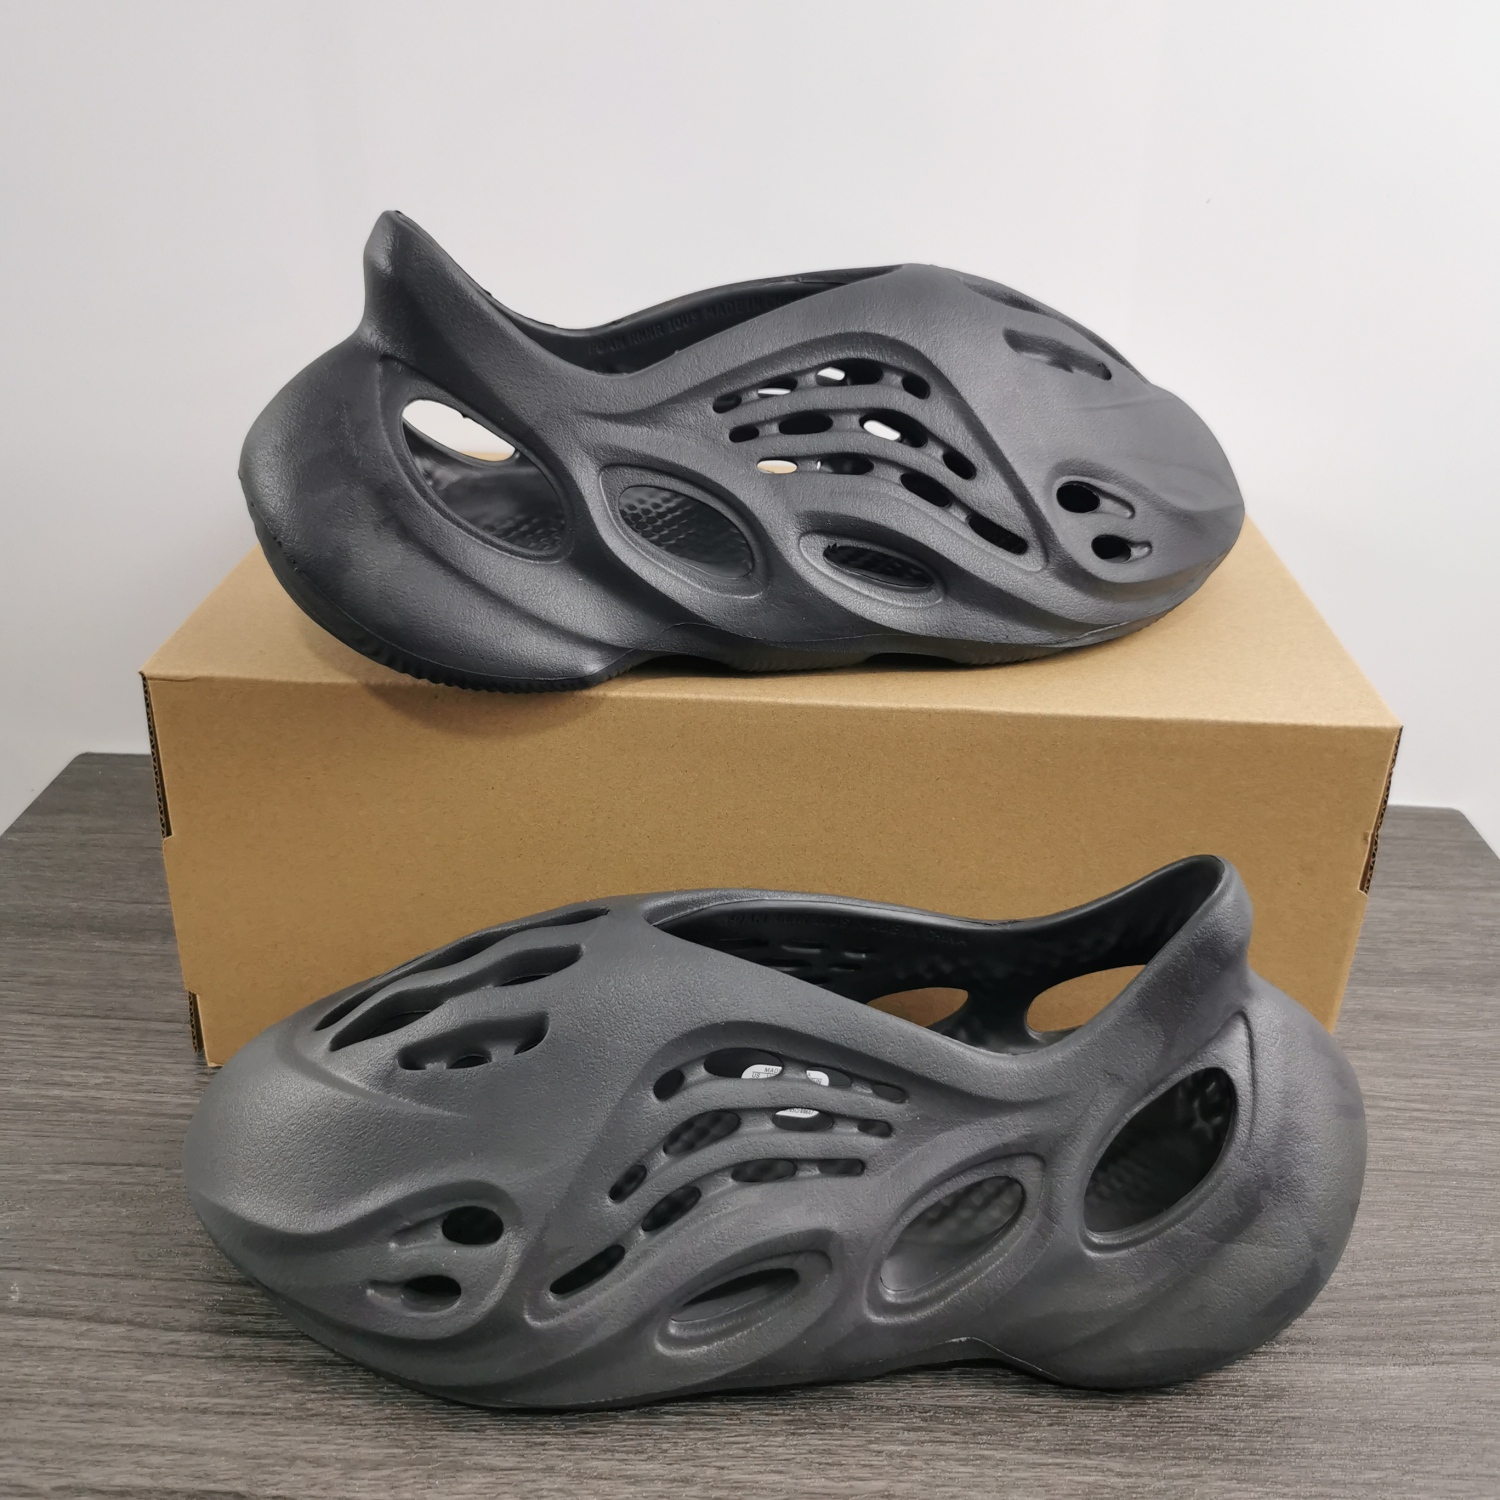 US$ 80.00 - Yeezy Foam Runner Onyx HP8739 - www.jacksneaker.com